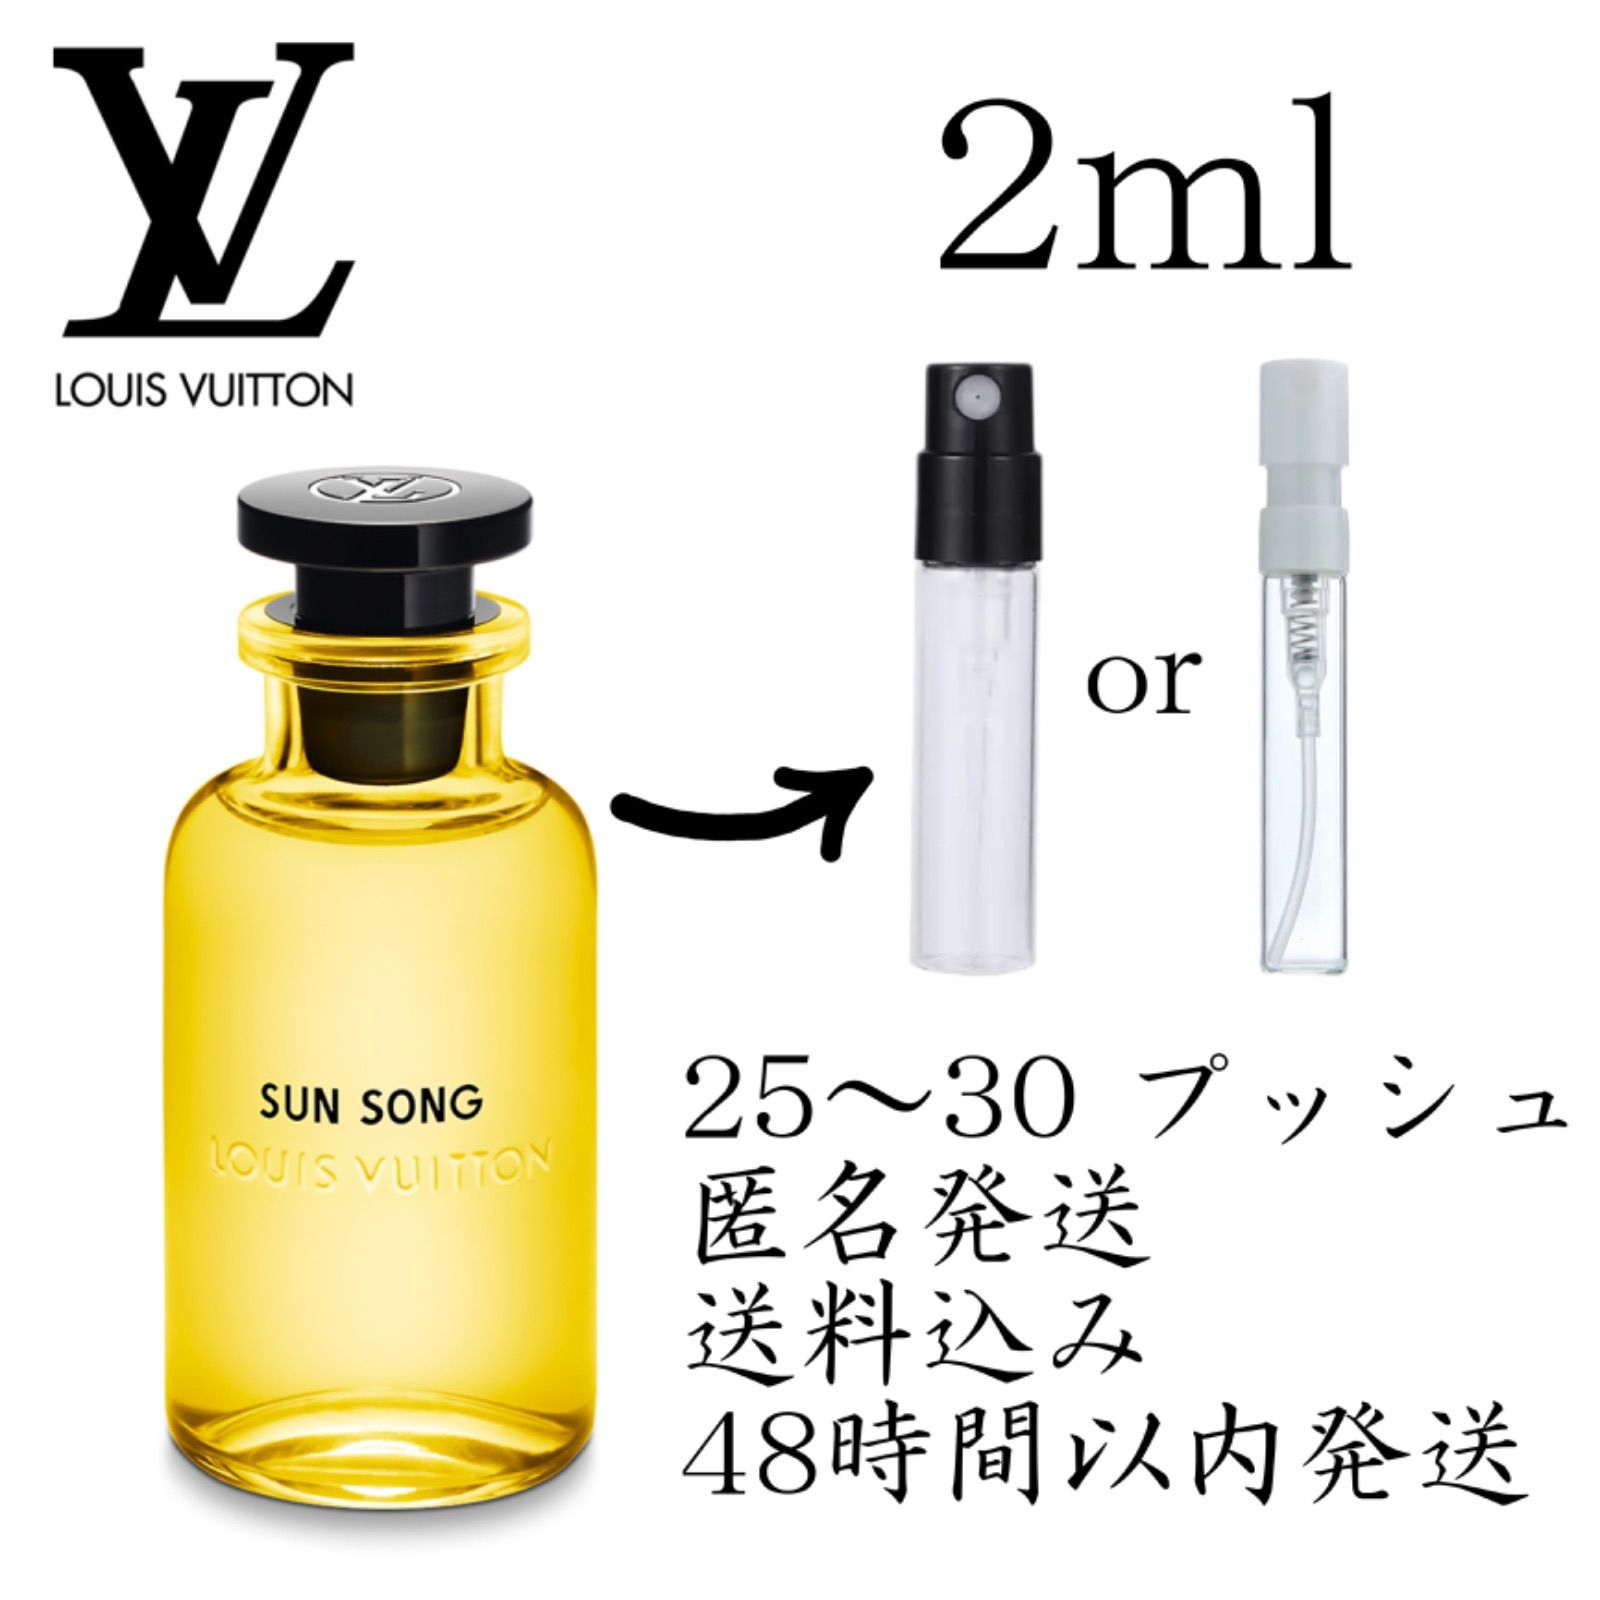 【新品未開封】Louis Vuitton Sun Song 香水